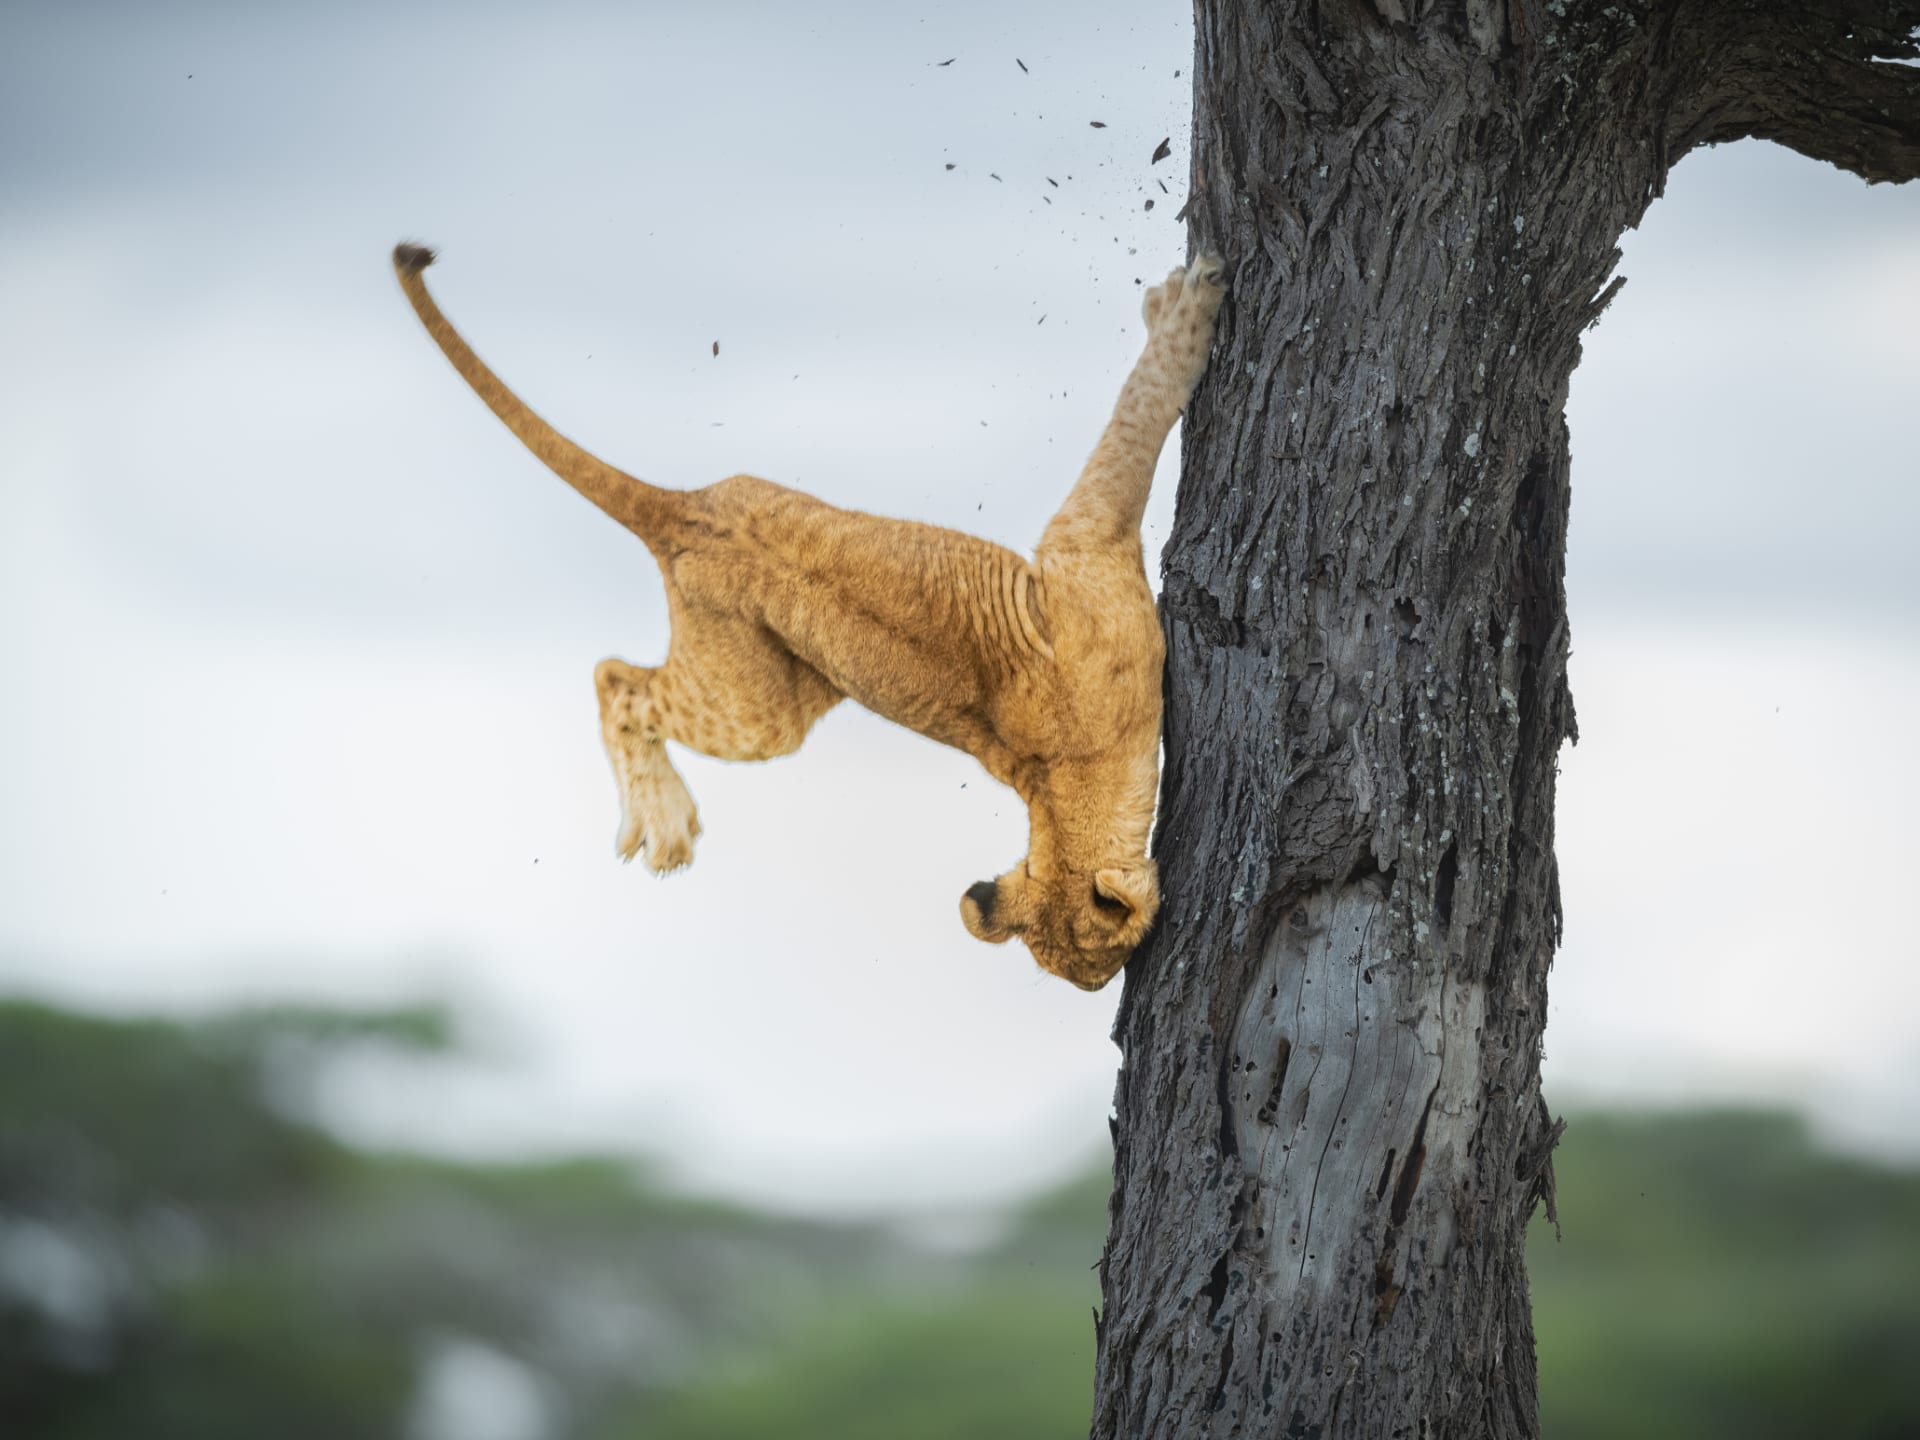 En Tanzanie, un photographe documente un lionceau "Son orgueil a été blessé" en tombant d'un arbre